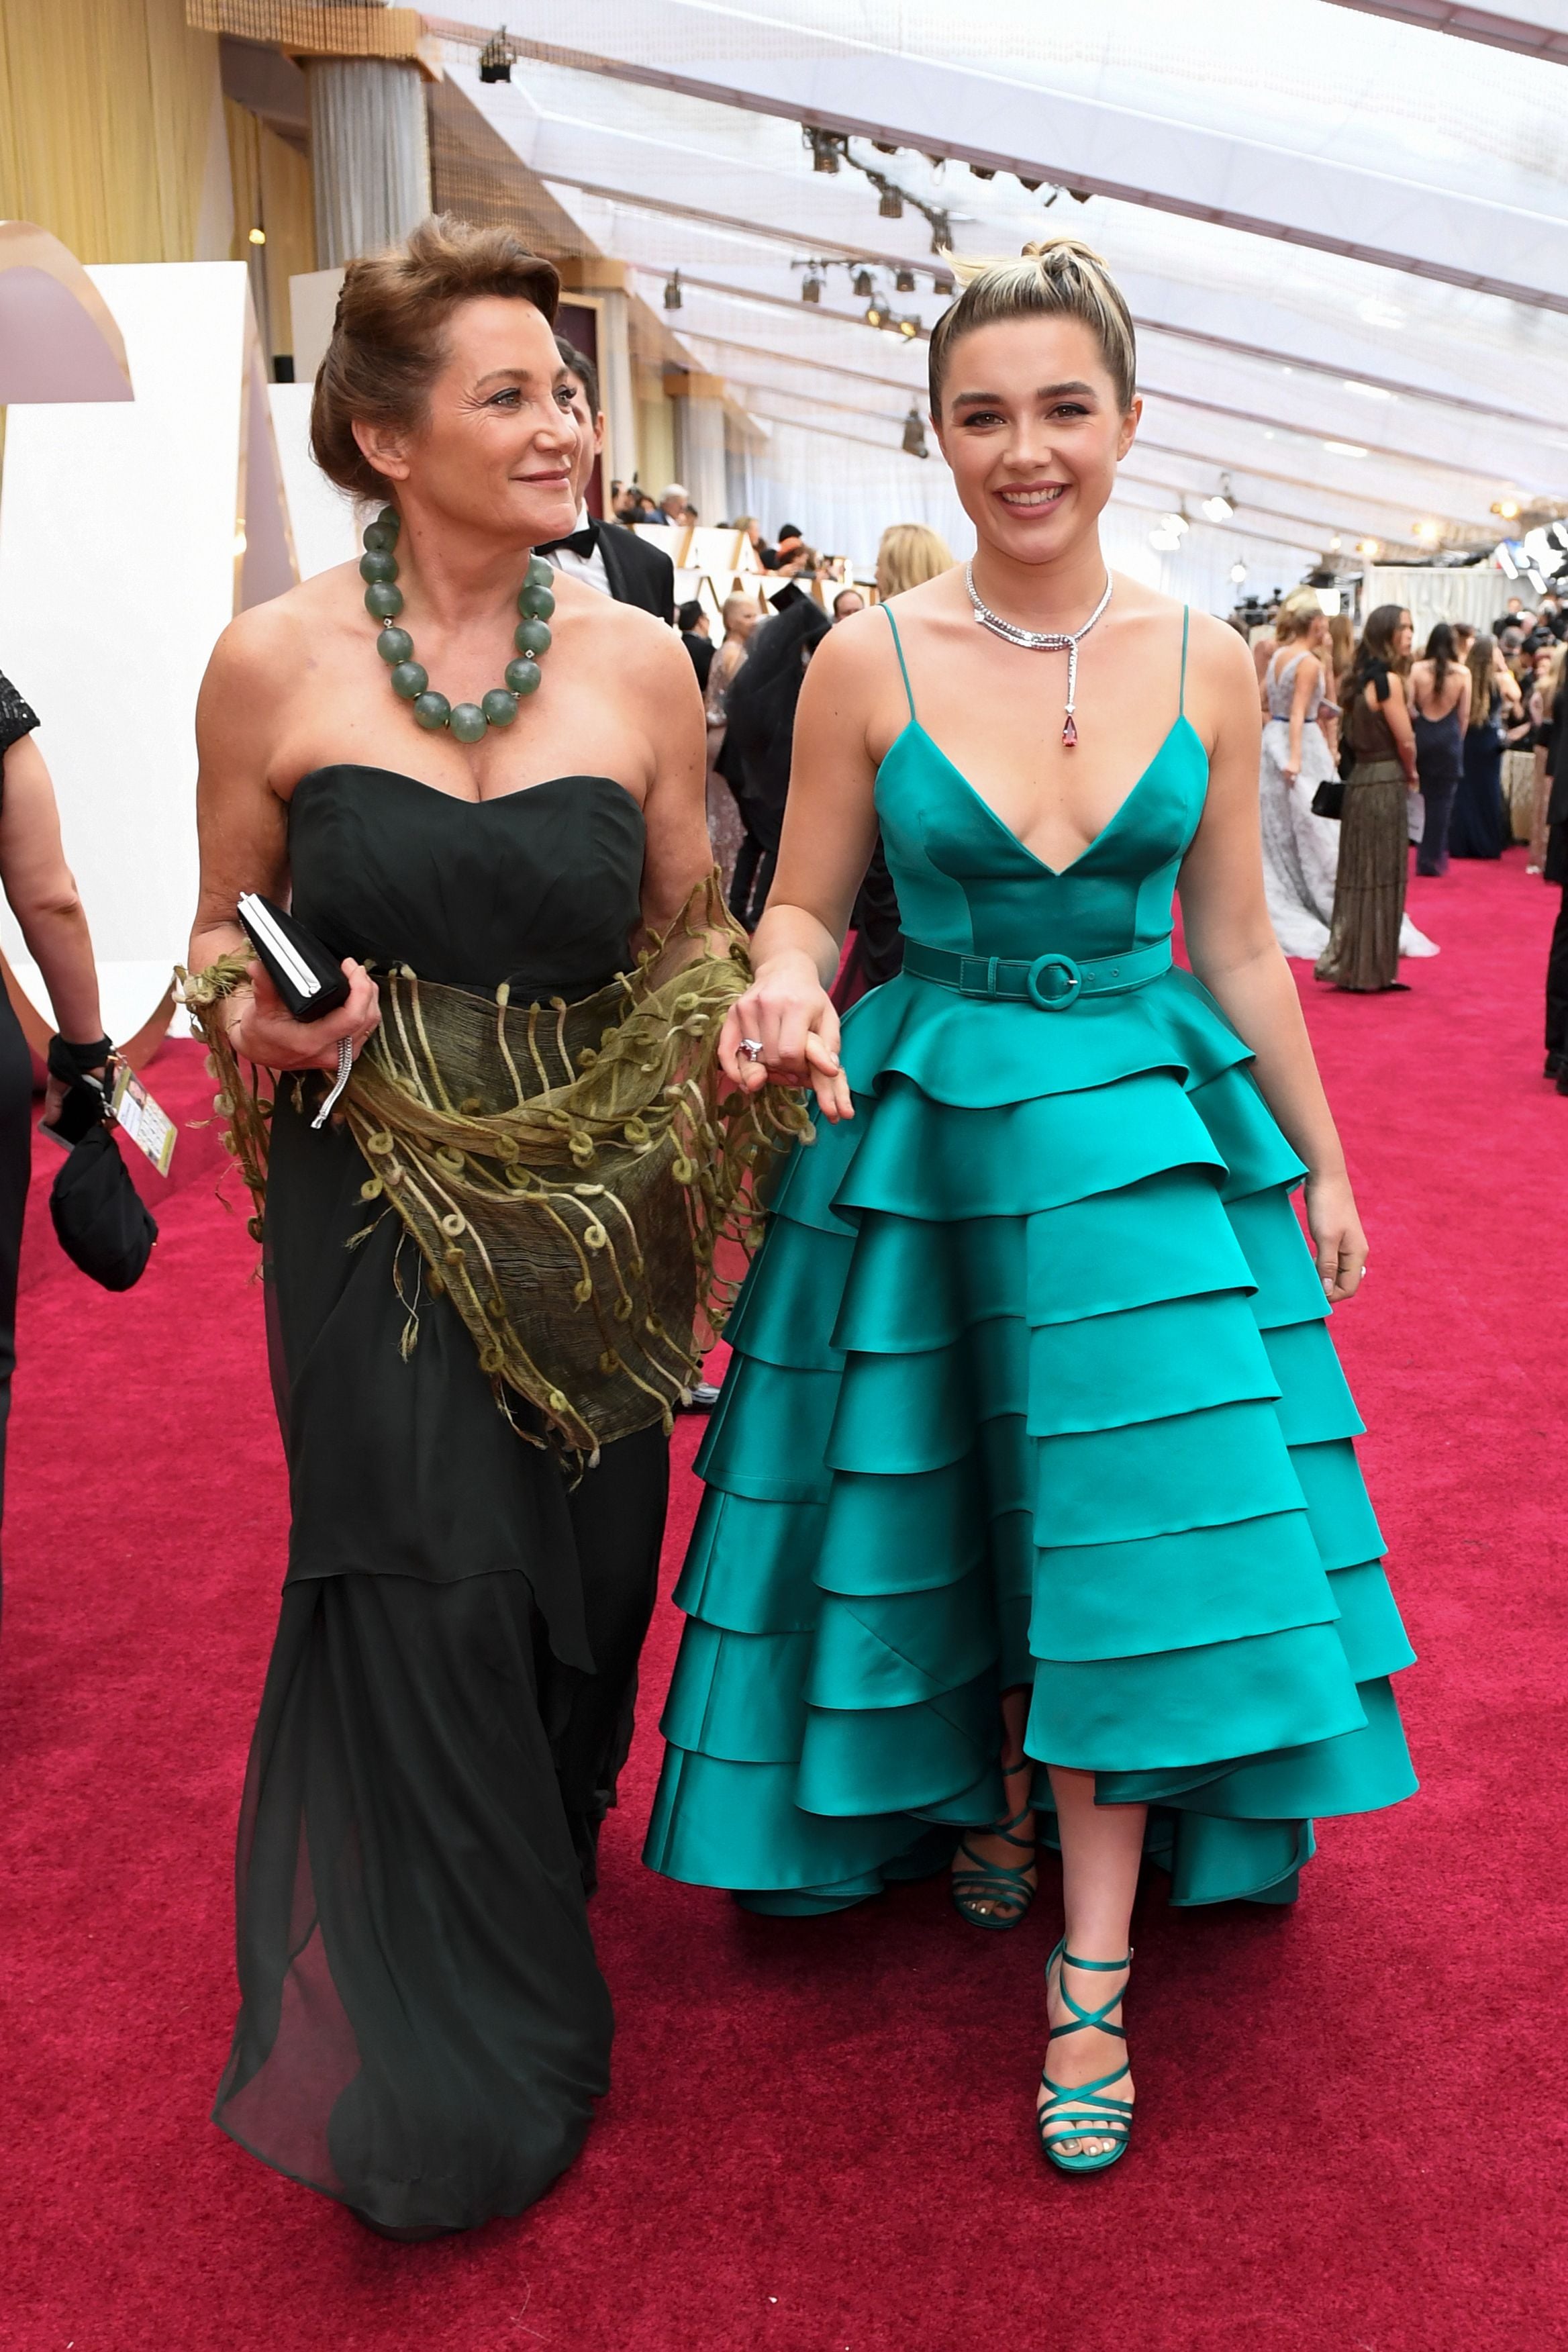 El paso a paso de los vestidos de Louise Vuitton de Florence Pugh para los  premios Oscar 2020